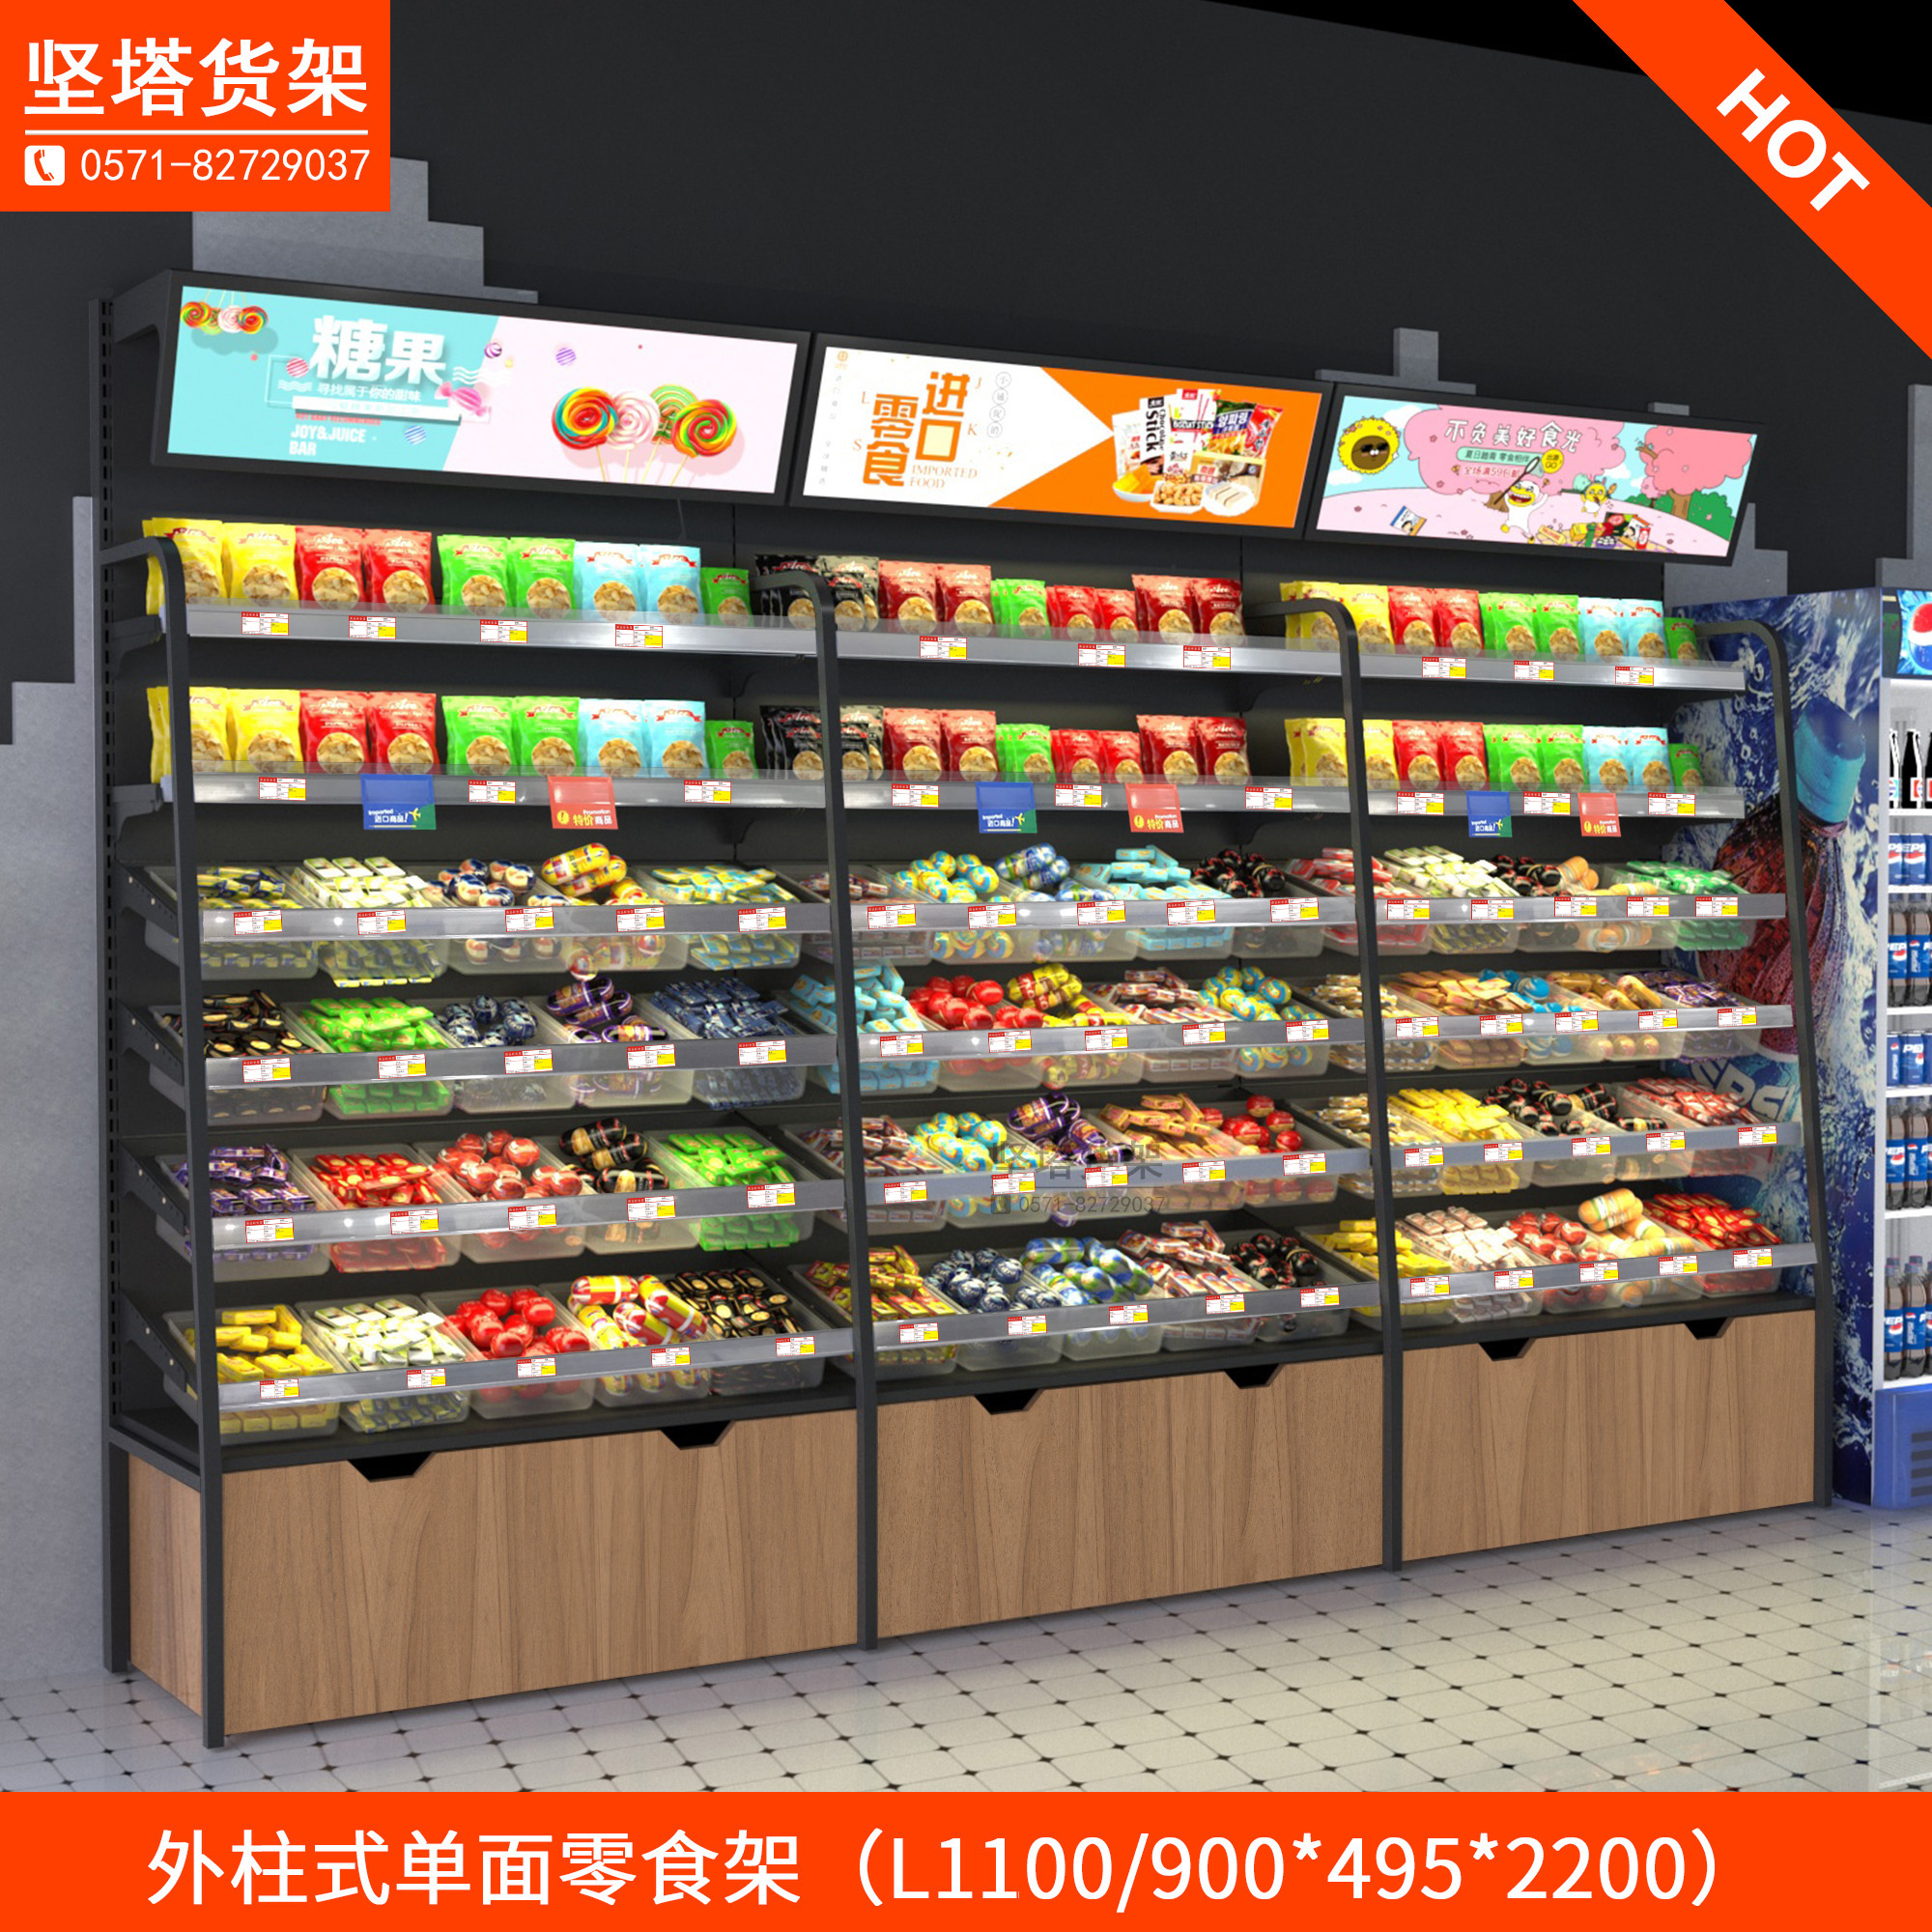 新品超市零食店货架展示柜便利店散装休闲小食品展示架单面陈列架